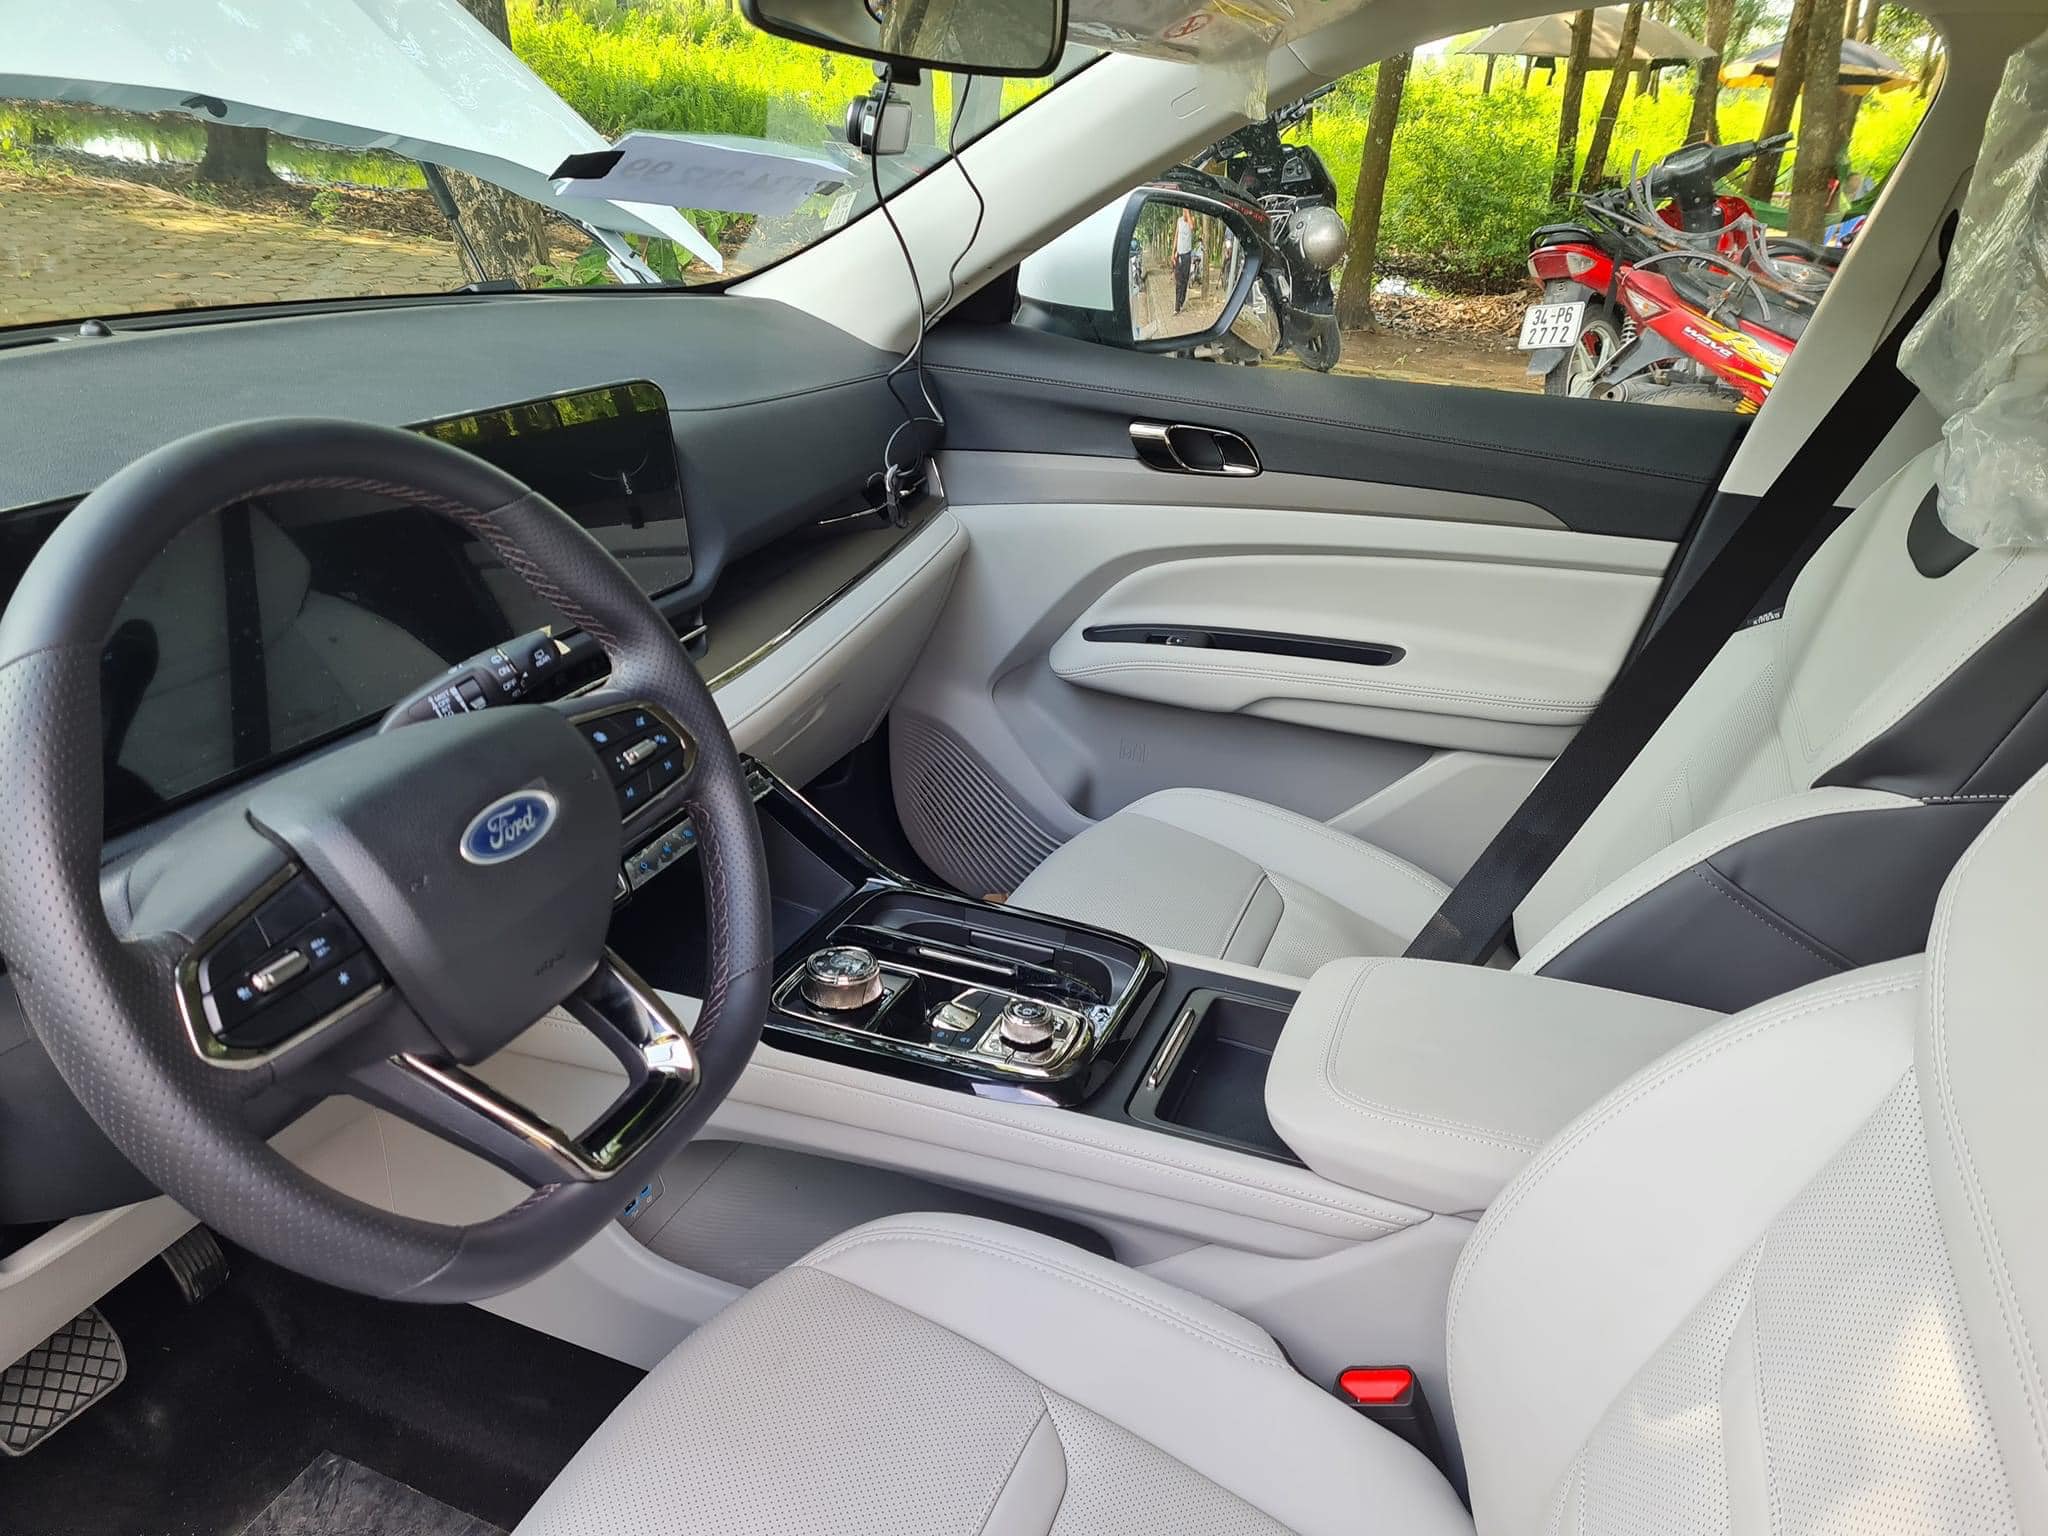 Ford Territory: Ford Territory là lựa chọn hoàn hảo cho những ai đang tìm kiếm một chiếc SUV đầy phong cách và tiện nghi. Với nội thất rộng rãi, hệ thống an toàn tiên tiến, và khả năng vận hành mạnh mẽ, chiếc xe này sẽ đem đến cho bạn một trải nghiệm lái tuyệt vời.